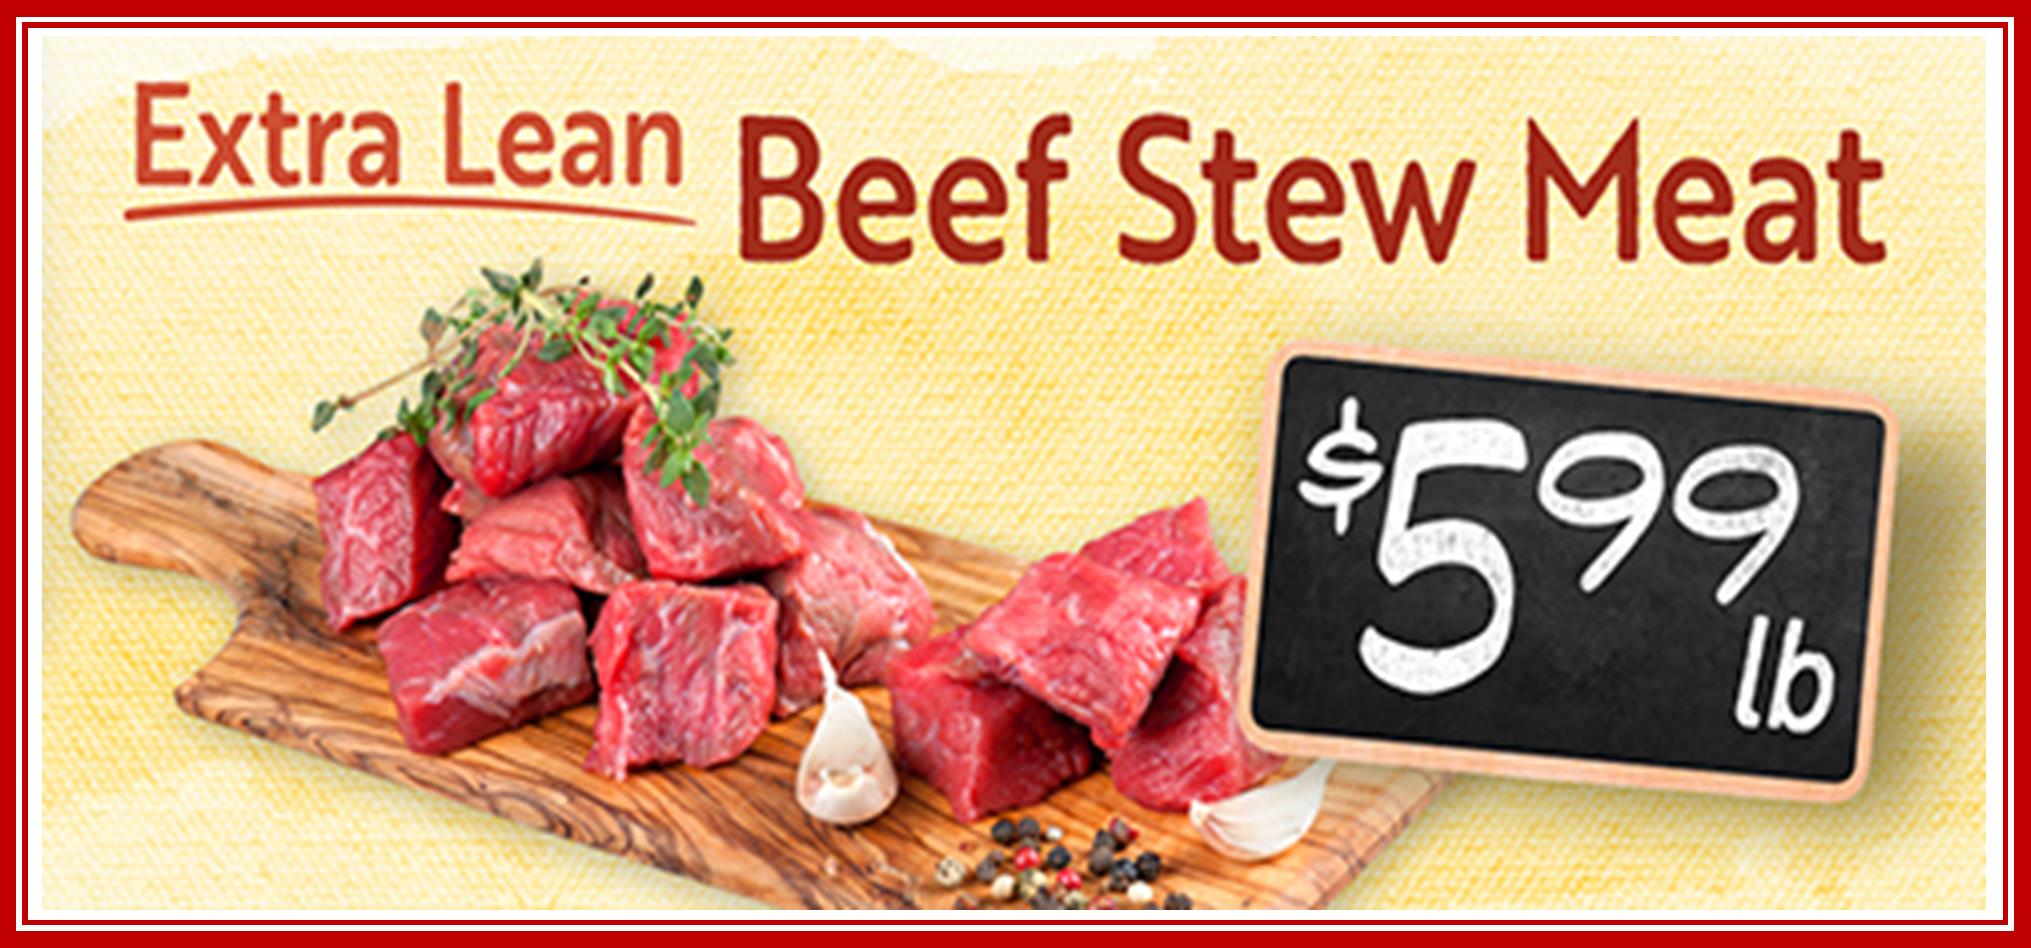 Stew Meat 599.jpg